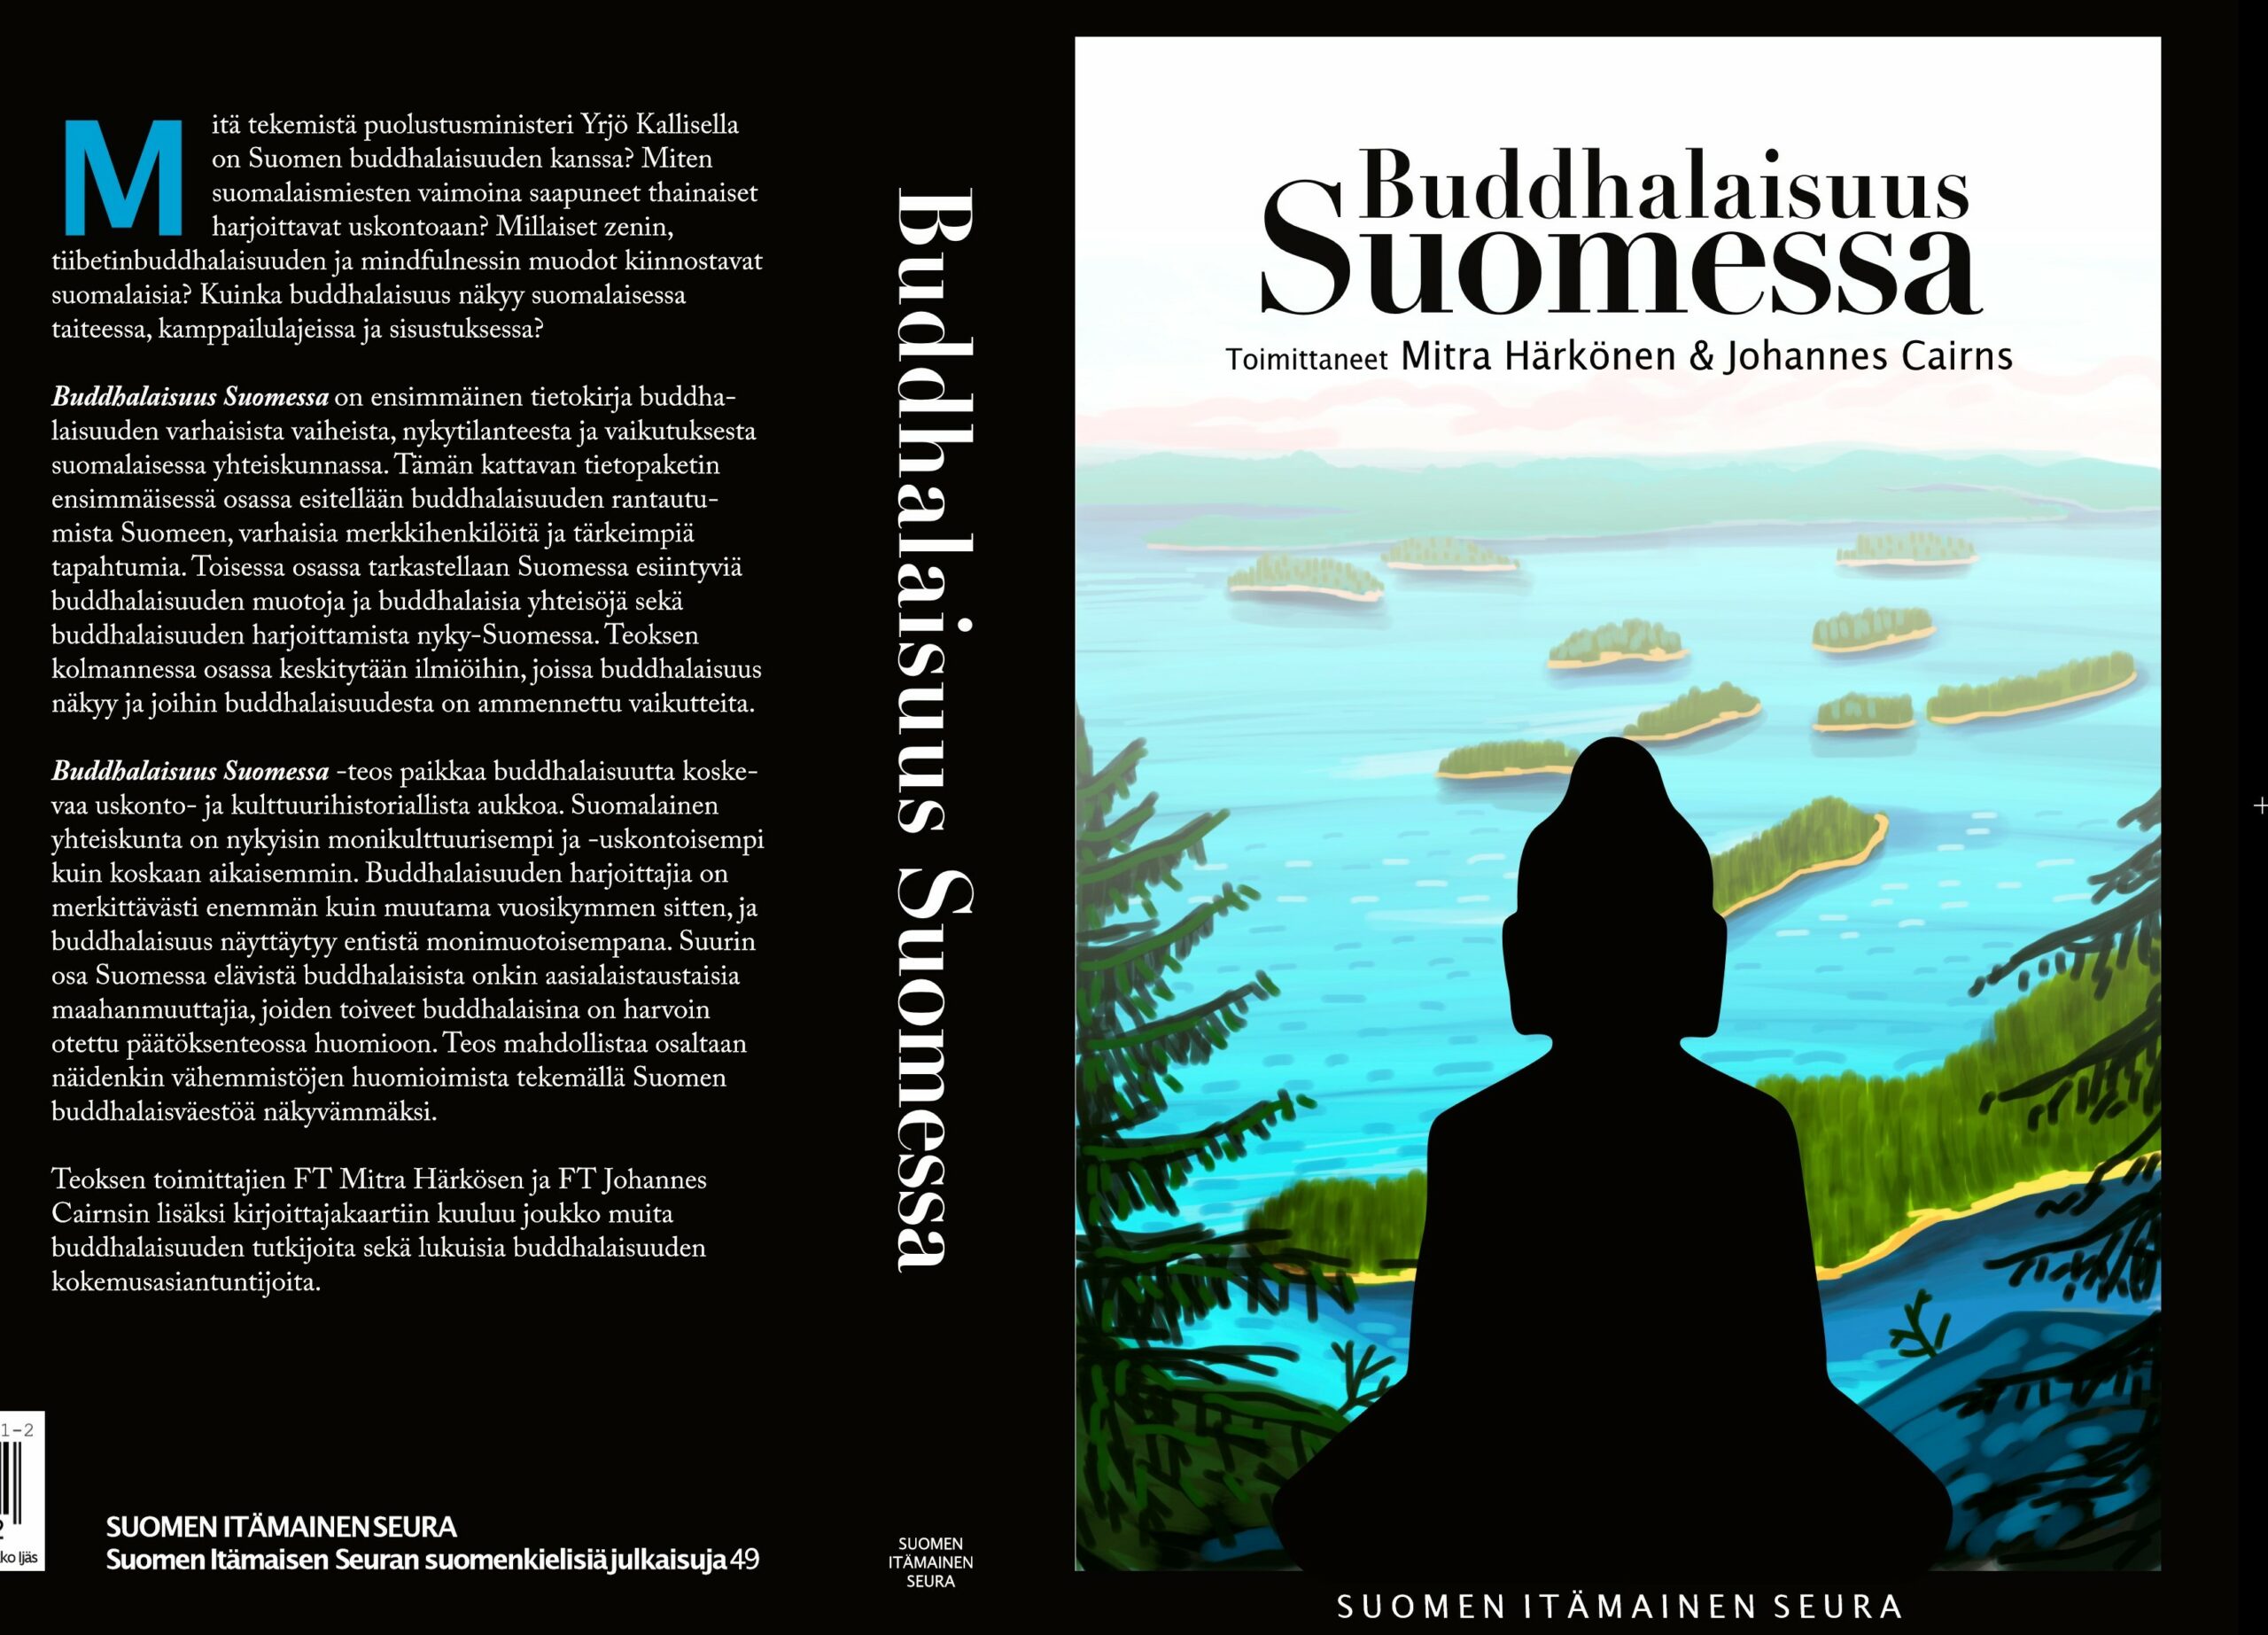 Buddhalaisuus Suomessa (2)